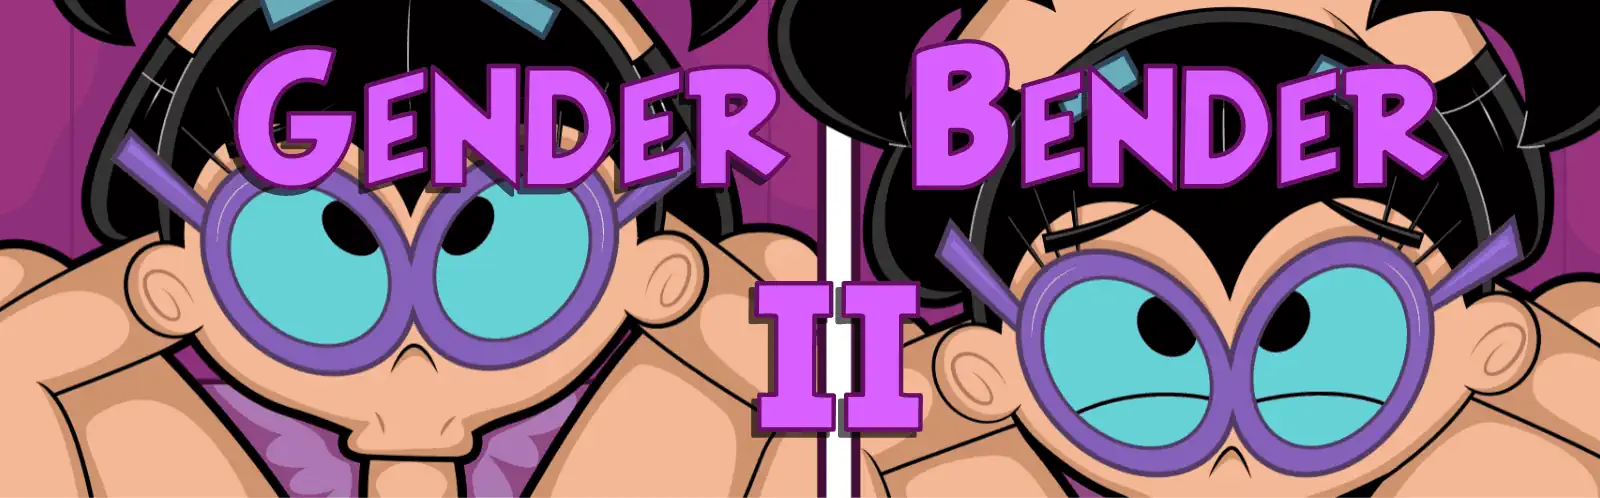 Gender Bender 2 Teaser